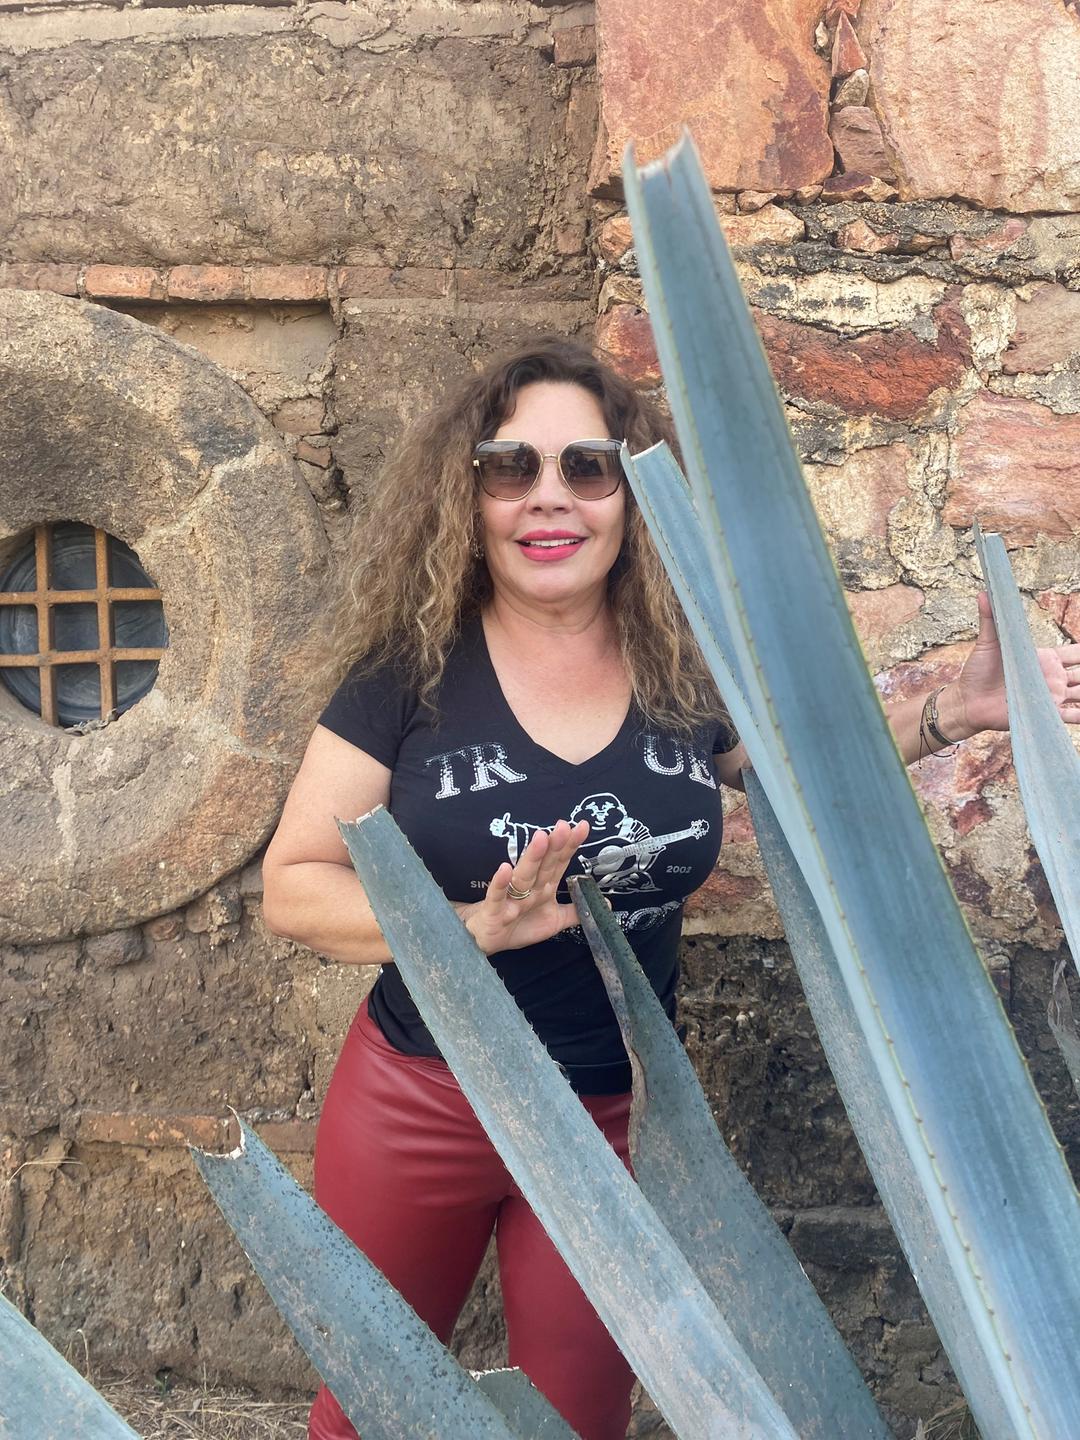 Die Brennereibesitzerin Leticia Hermosillo, mit langen lockigen Haaren, Sonnenbrille und roter Lederhose, steht hinter einer großen Agavenpflanze vor einer Mauer.